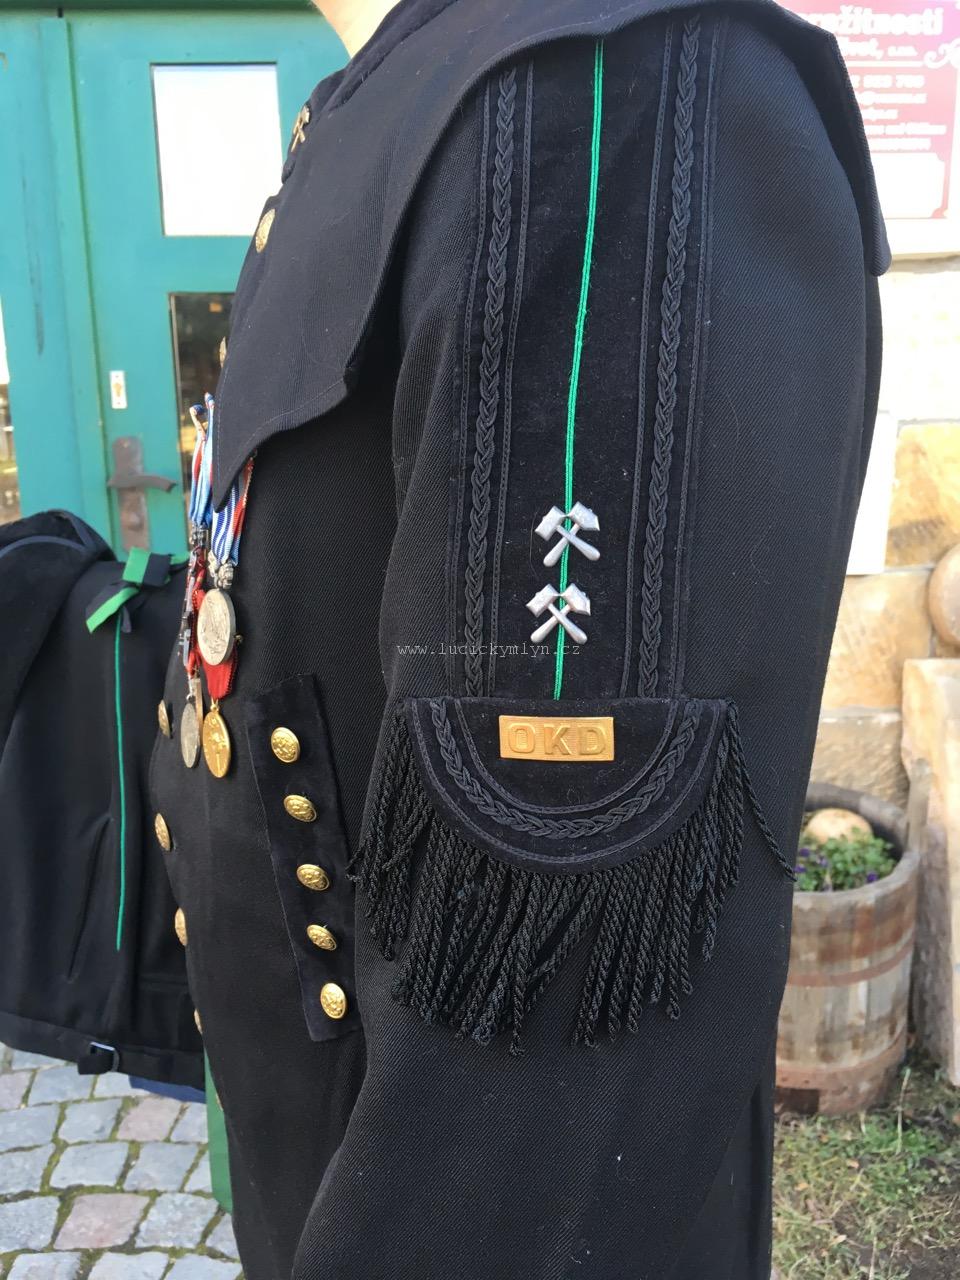 Slavnostní hornická (havířská) uniforma s řády a vyznamenáními